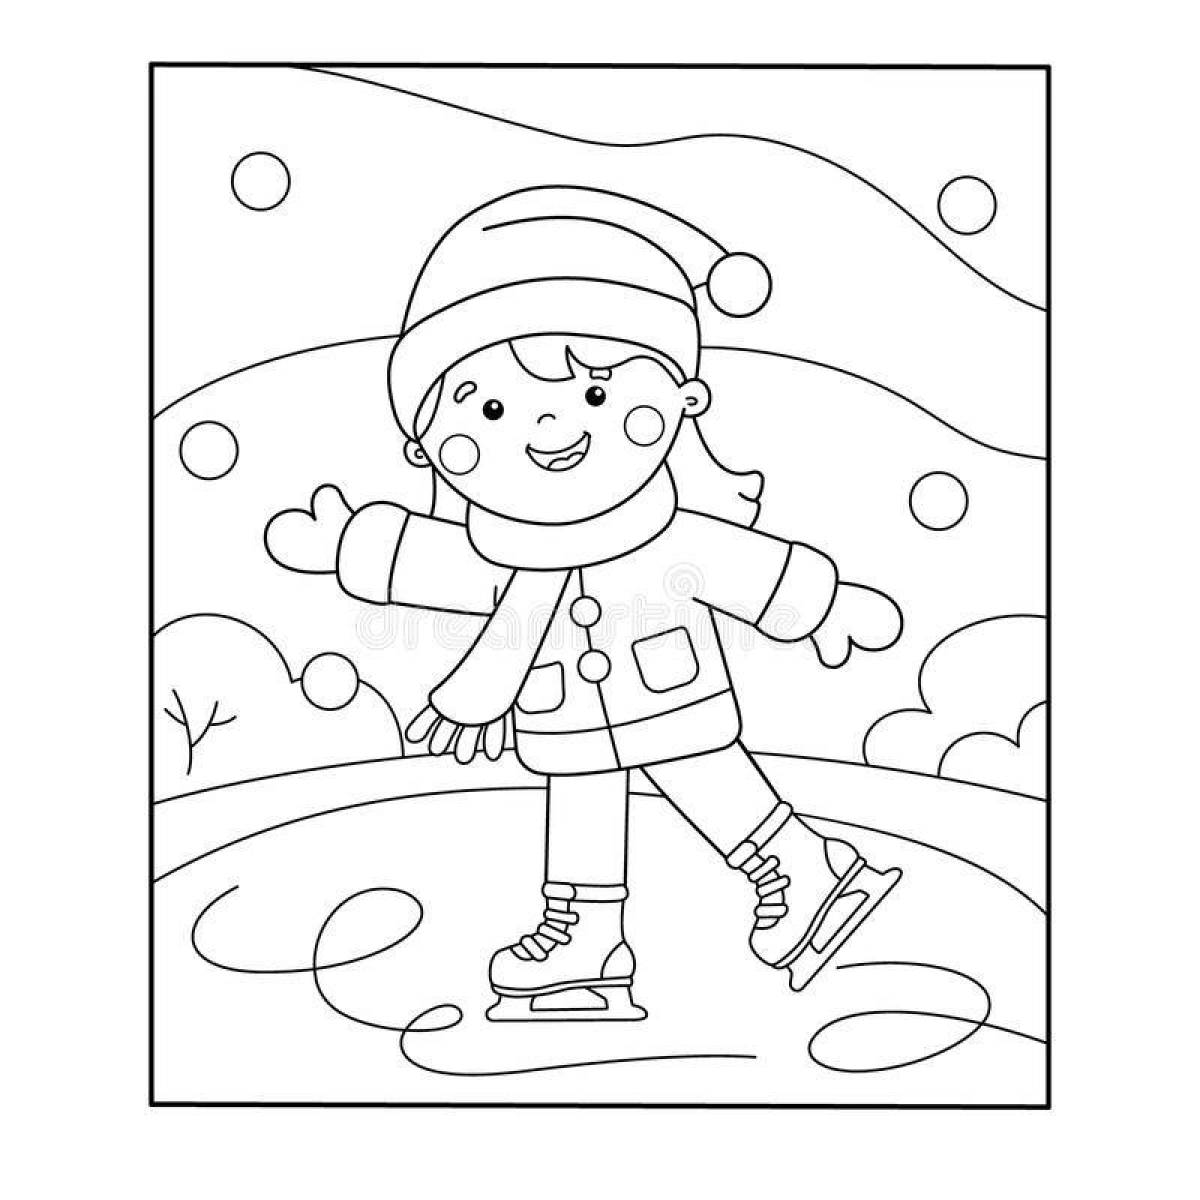 Игривая страница раскраски зимних видов спорта для детей 6-7 лет